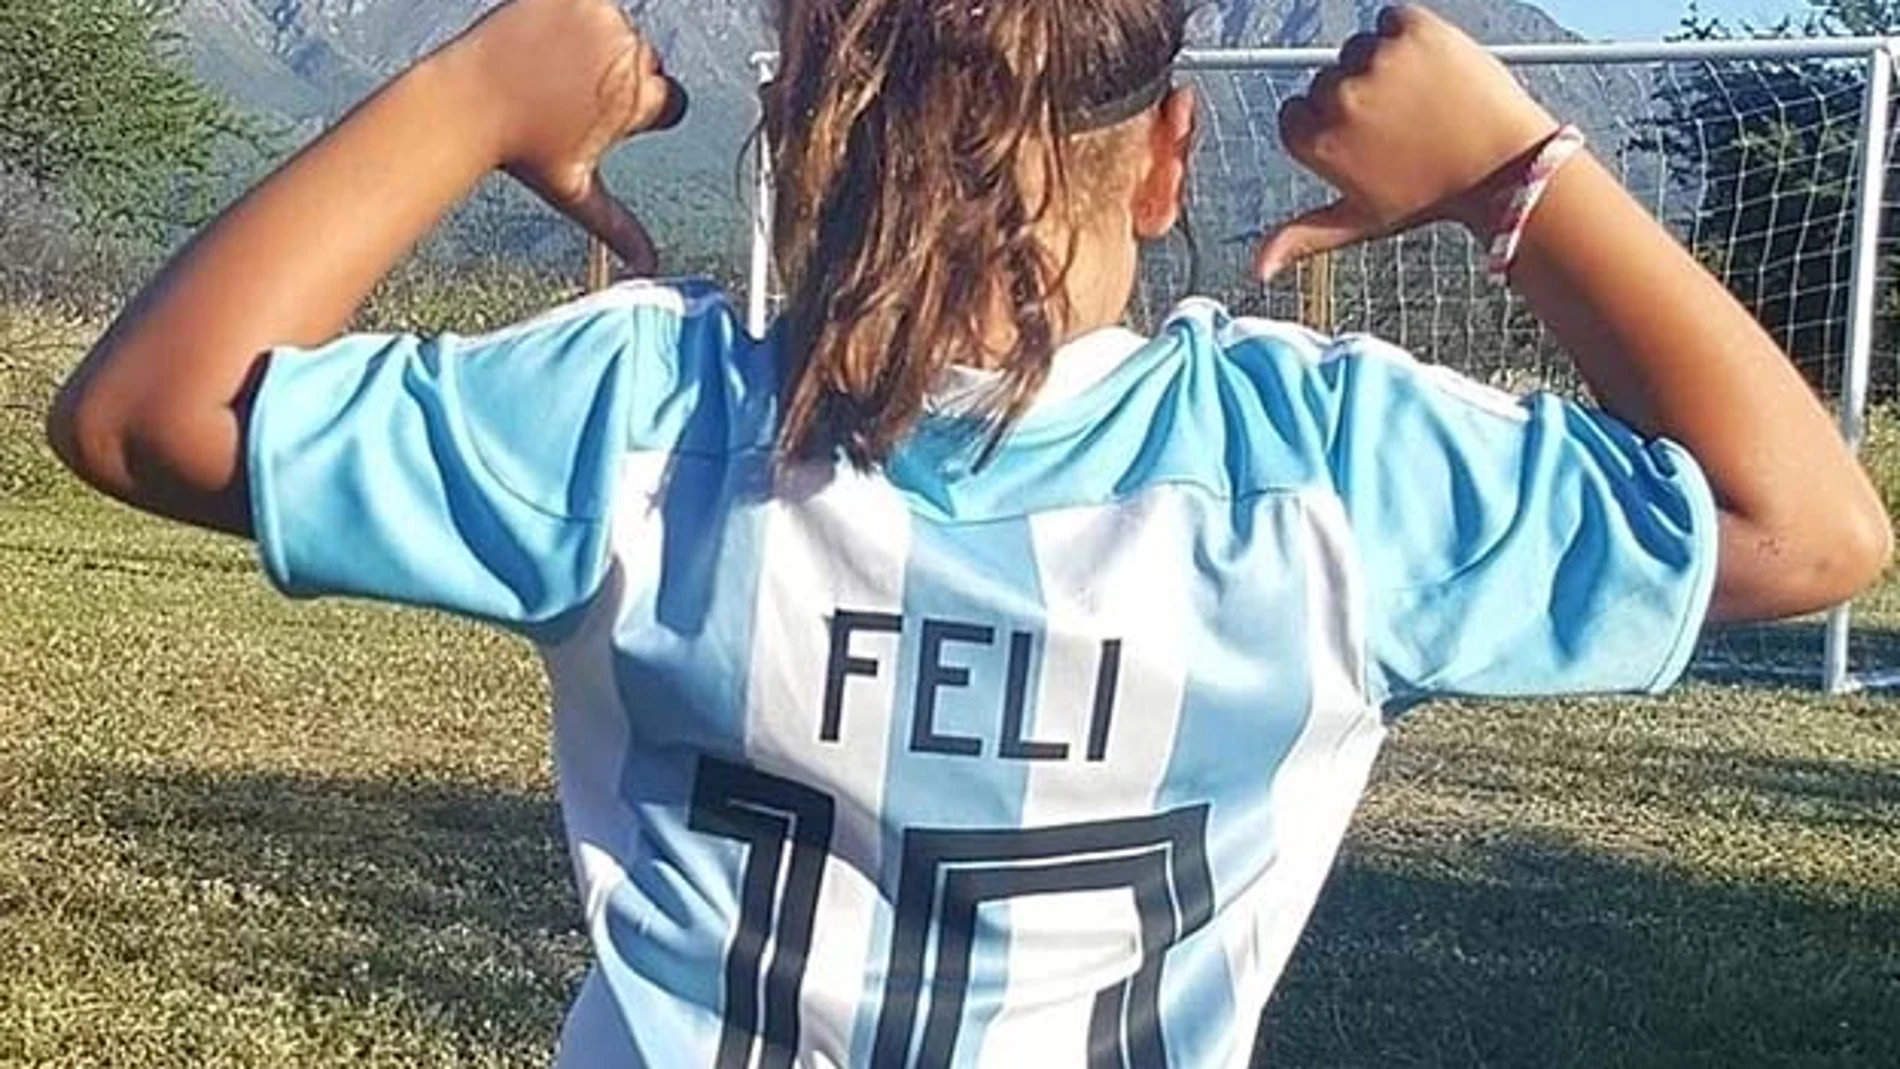 Felicitas Flores Mussi, la futbolista argentina de ocho años que ha fichado por Nike.